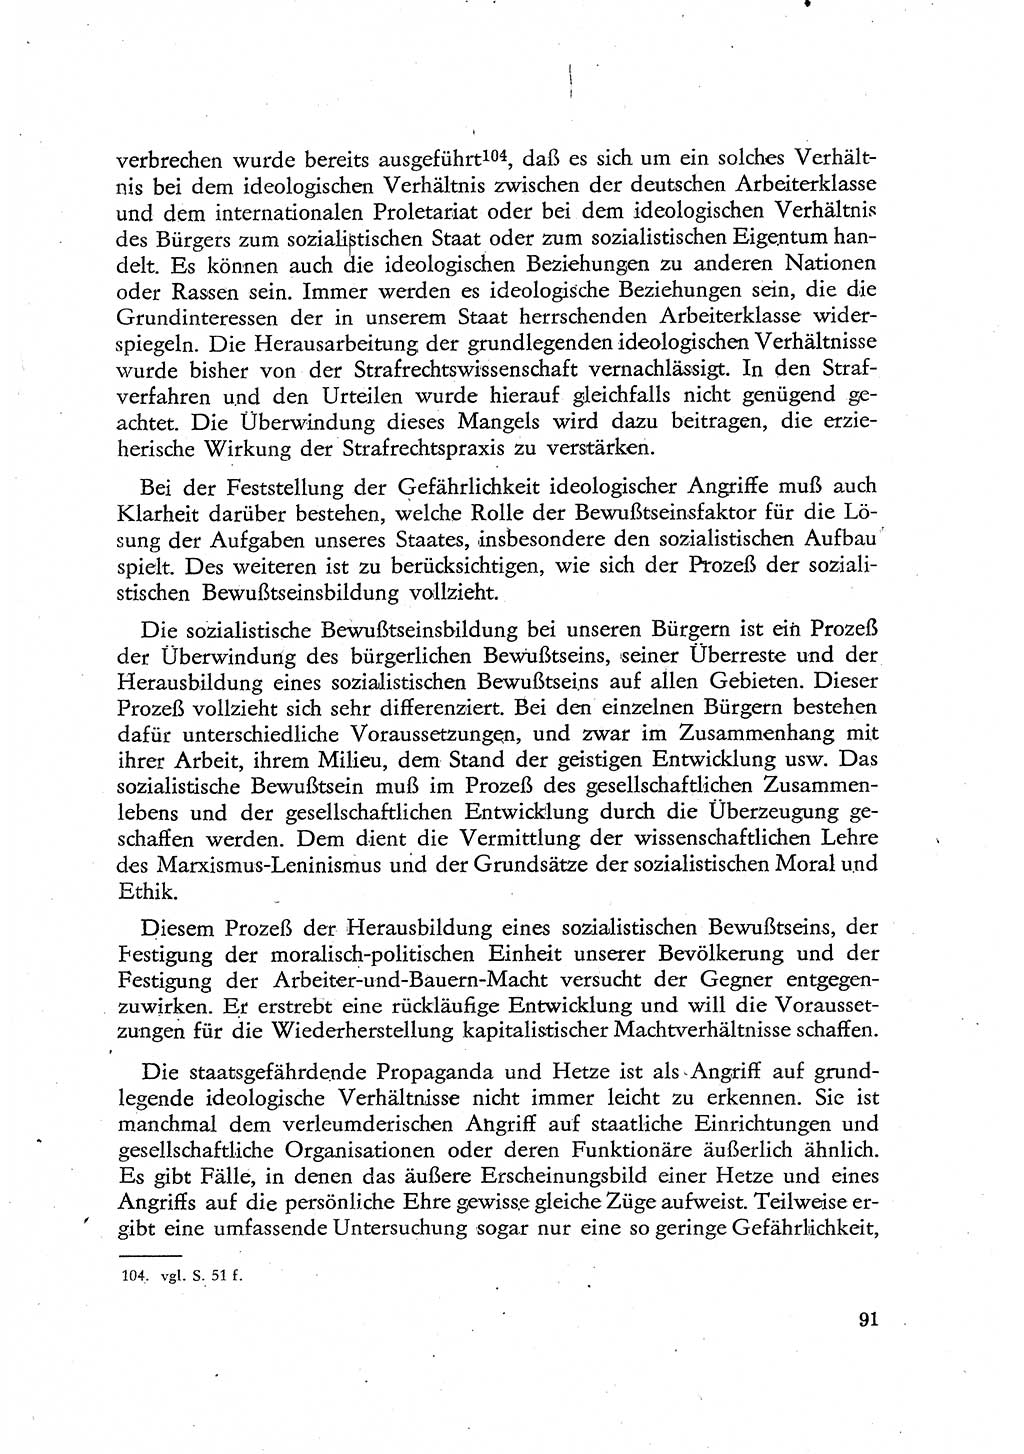 Beiträge zum Strafrecht [Deutsche Demokratische Republik (DDR)], Staatsverbrechen 1959, Seite 91 (Beitr. Strafr. DDR St.-Verbr. 1959, S. 91)